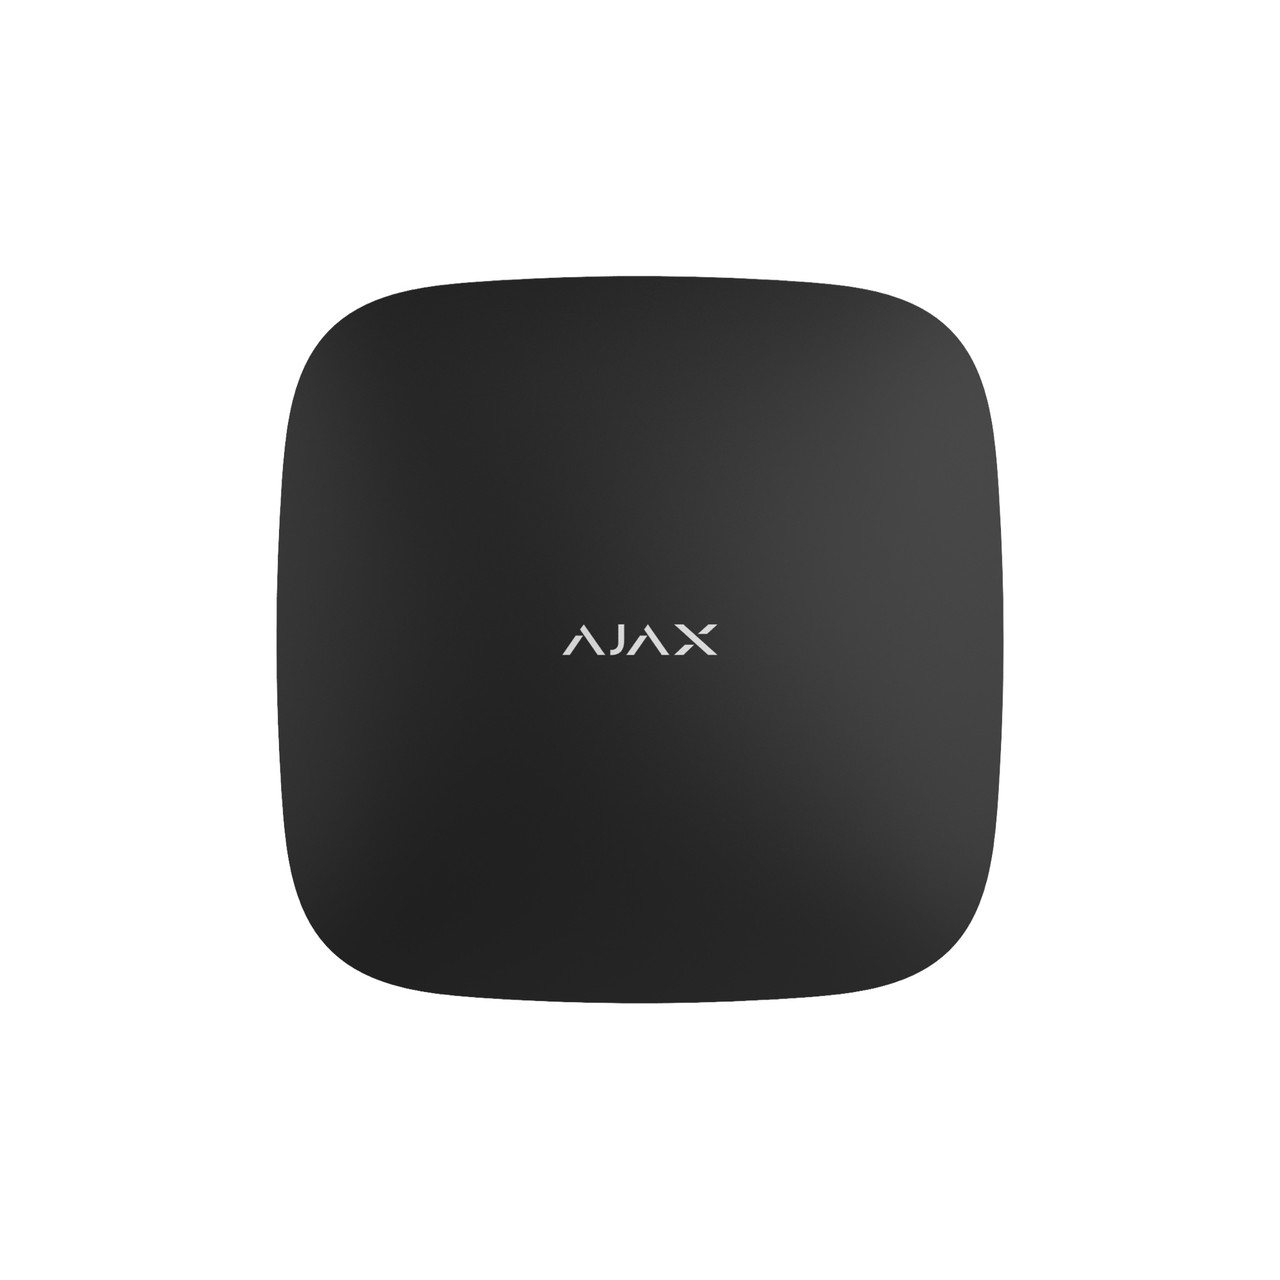 Інтелектуальна охоронна централь Ajax Hub 2 Plus, gsm, ethernet, wi-fi, jeweller, бездротова, чорний